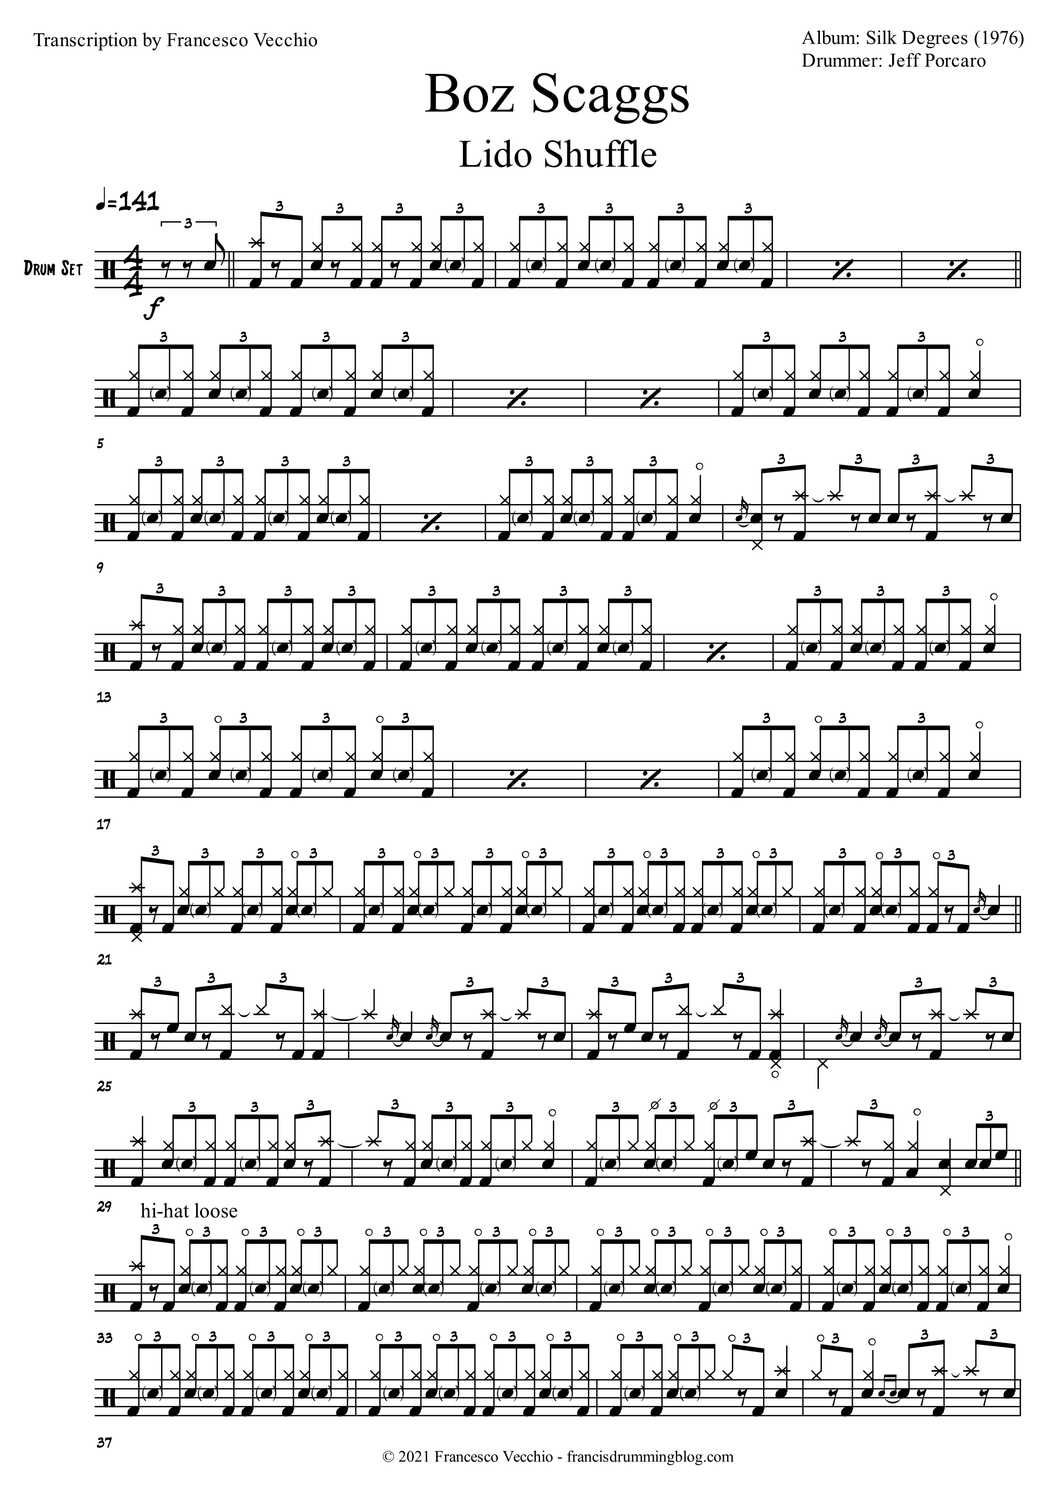 Lido Shuffle - Boz Scaggs - Full Drum Transcription / Drum Sheet Music - FrancisDrummingBlog.com